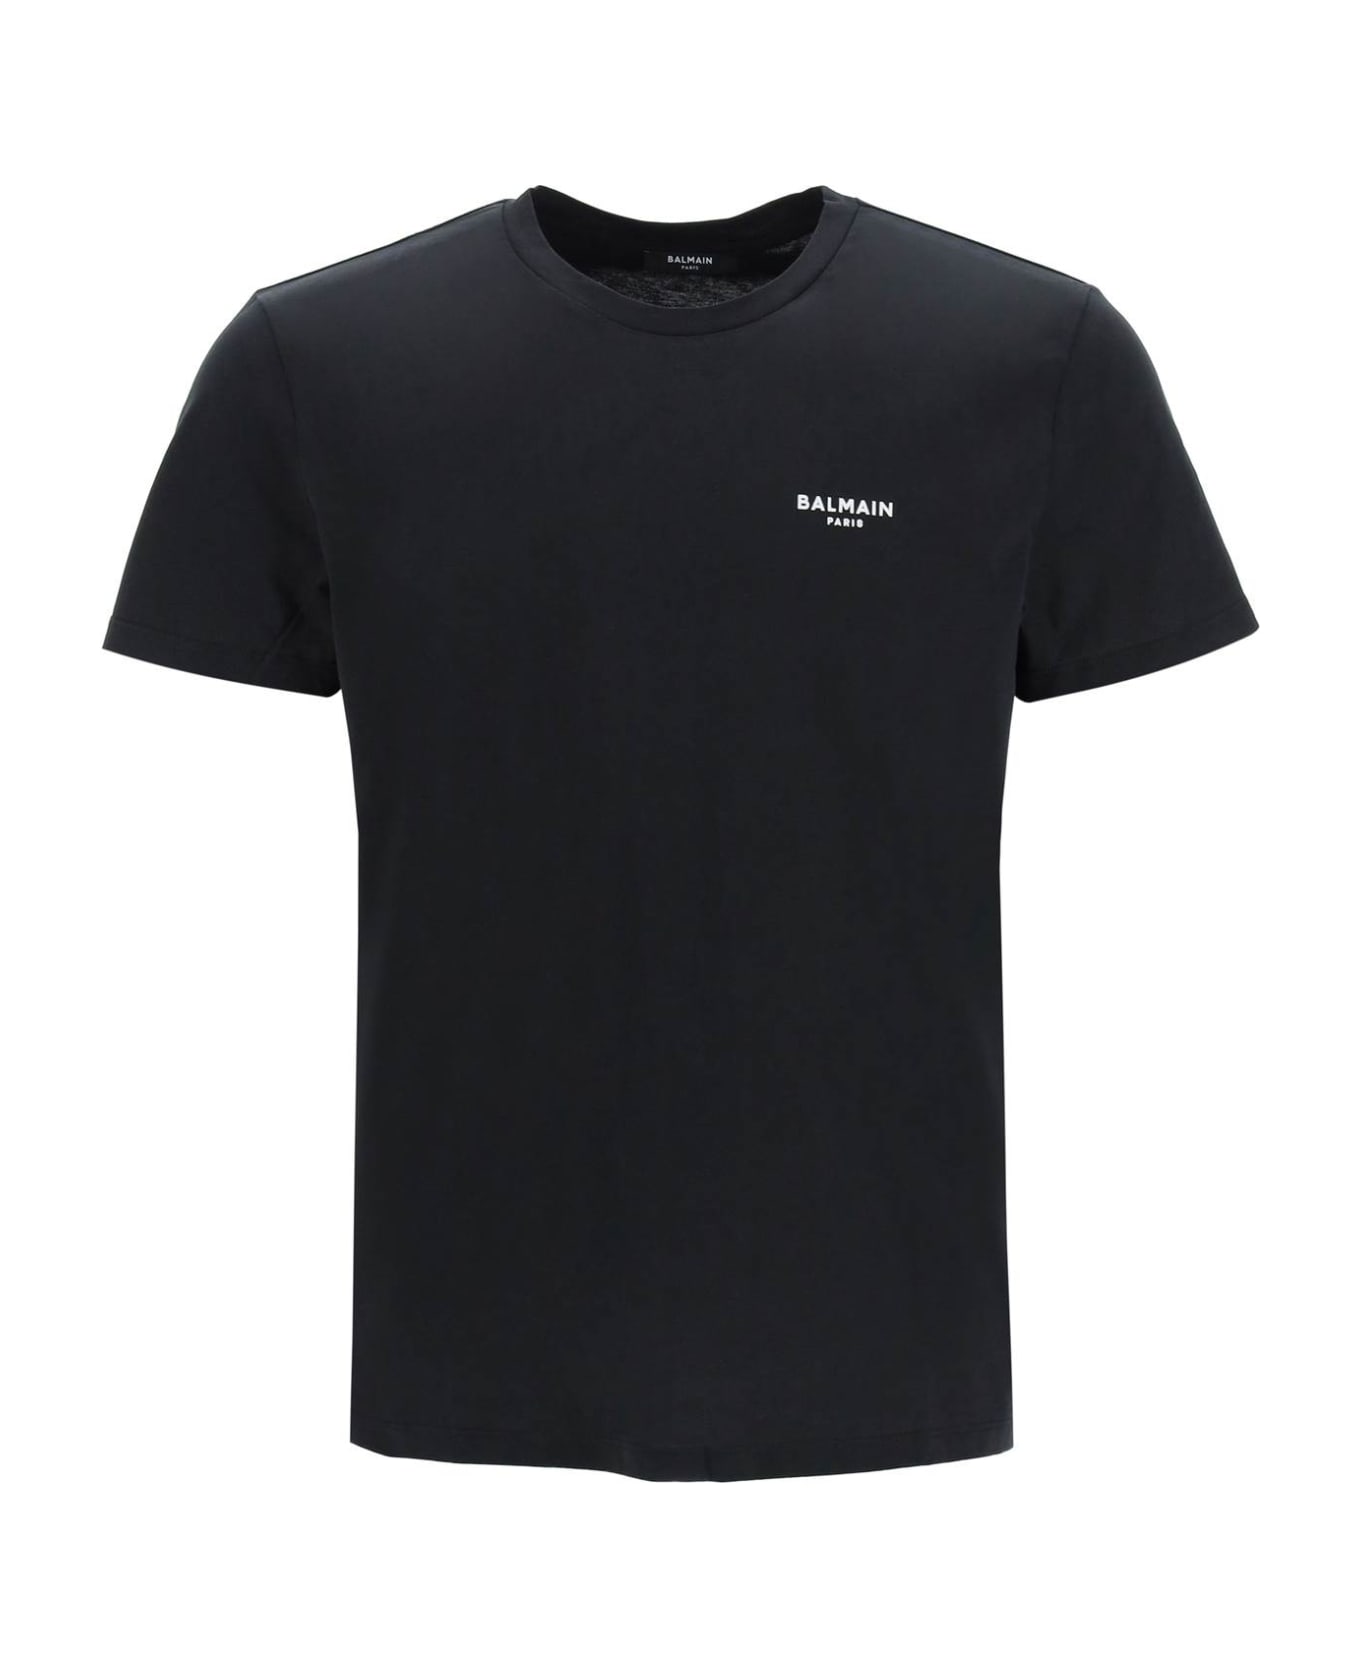 Balmain Black Cotton T-shirt - Eab Noir Blanc シャツ